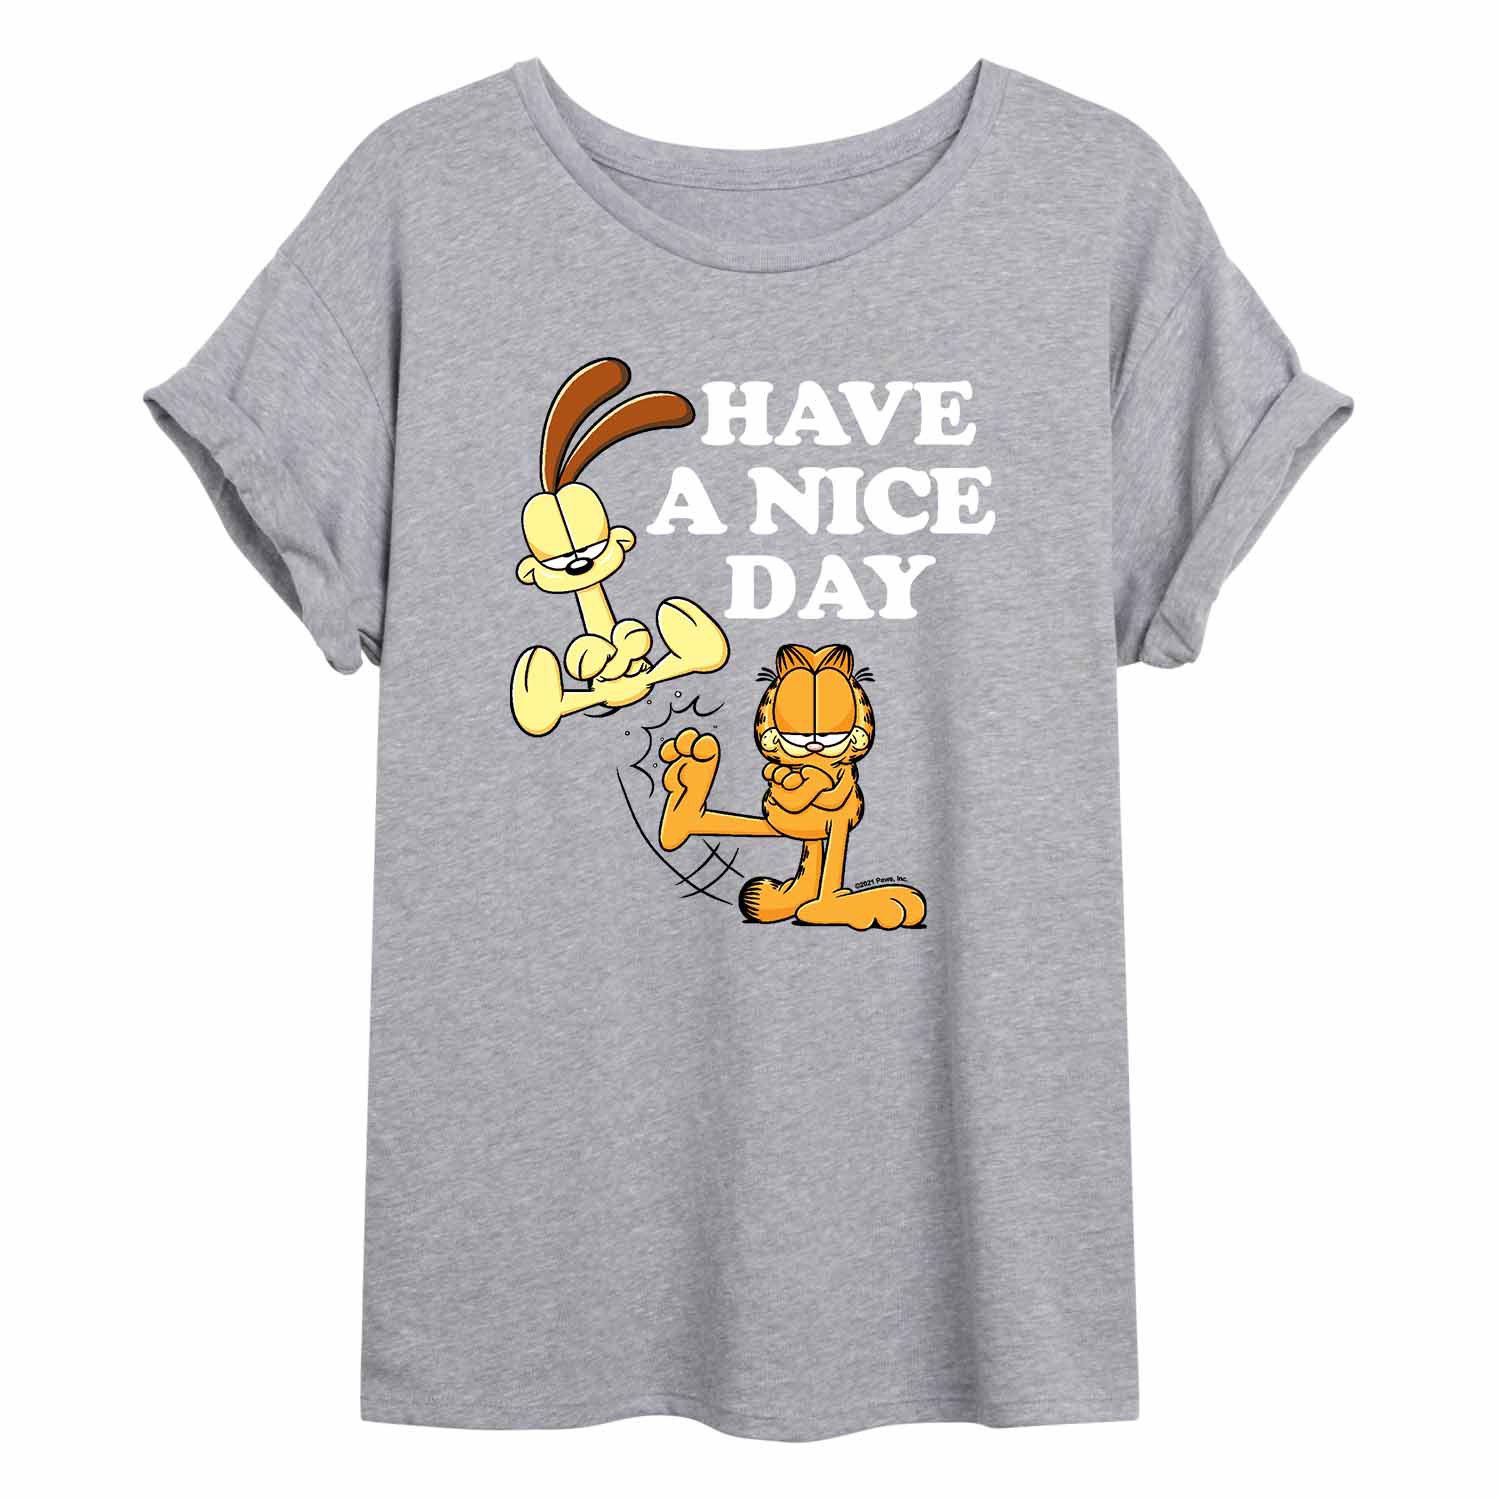 Струящаяся футболка Garfield для юниоров с надписью «Have A Nice Day» Licensed Character